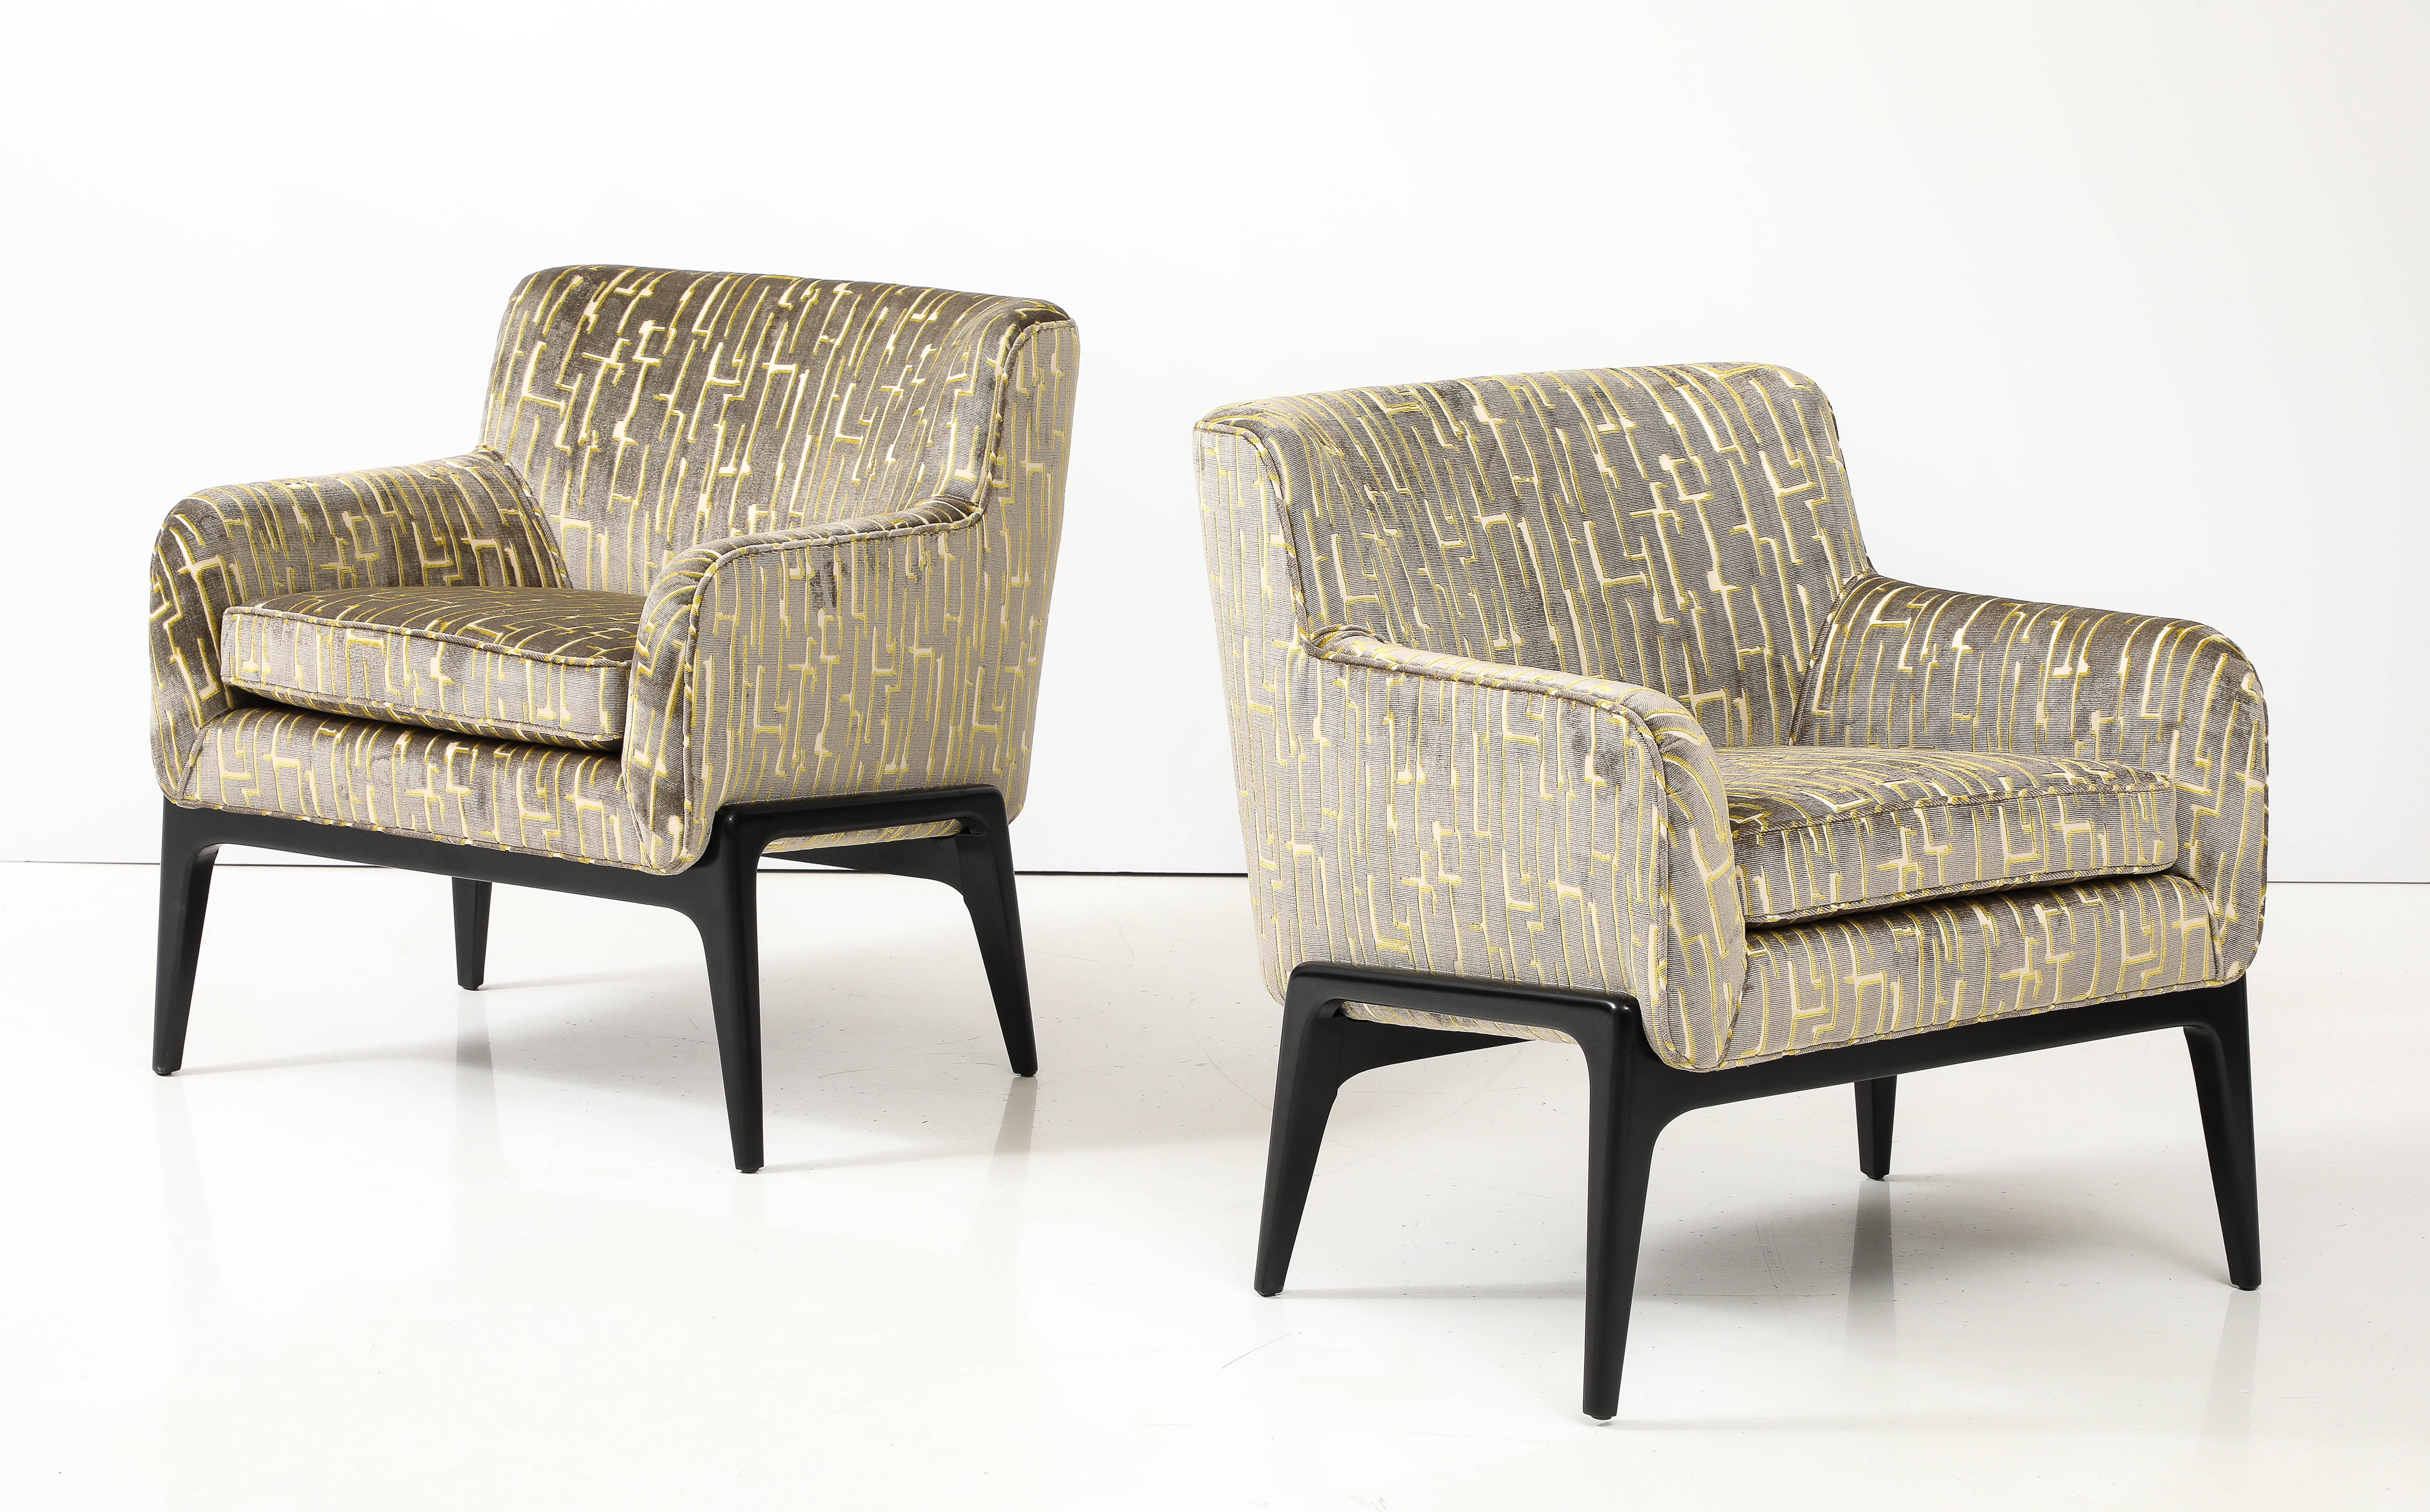 Schönes Paar 1961 schwimmende Sitze moderne Lounge  Stühle neu gepolstert mit italienischem Samtstoff, vollständig restauriert und neu gepolstert mit schwarz lackierten Sockeln, mit leichten alters- und gebrauchsbedingten Gebrauchsspuren und Patina. 